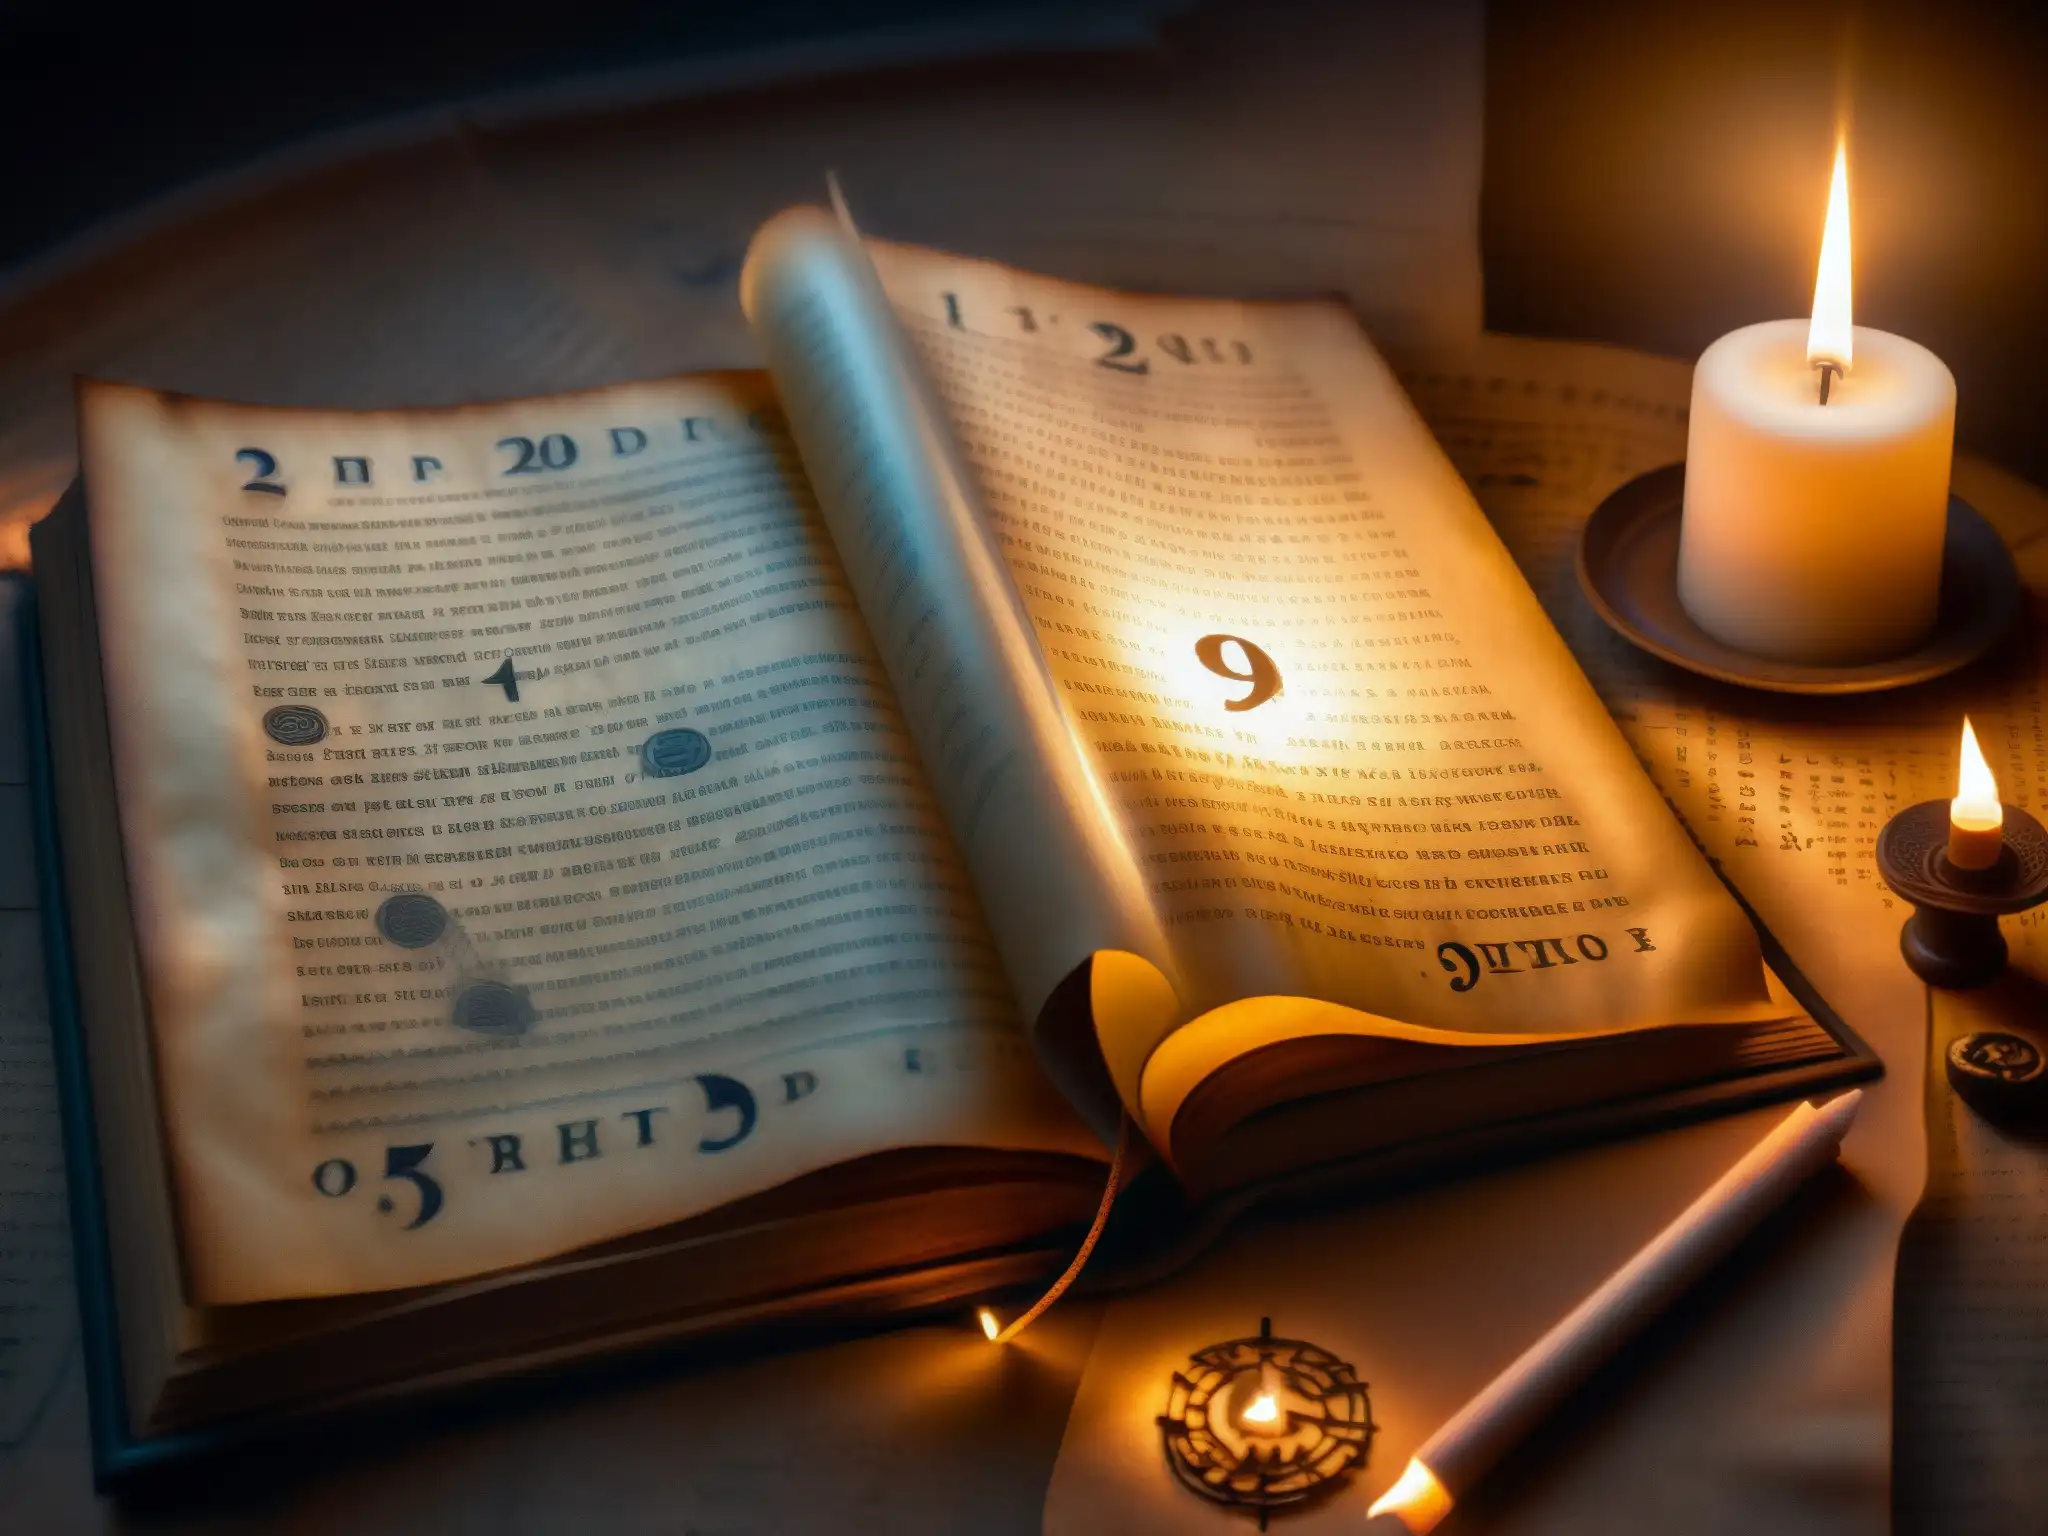 Un pergamino envejecido con símbolos misteriosos iluminado por una vela, rodeado de artefactos antiguos y libros polvorientos